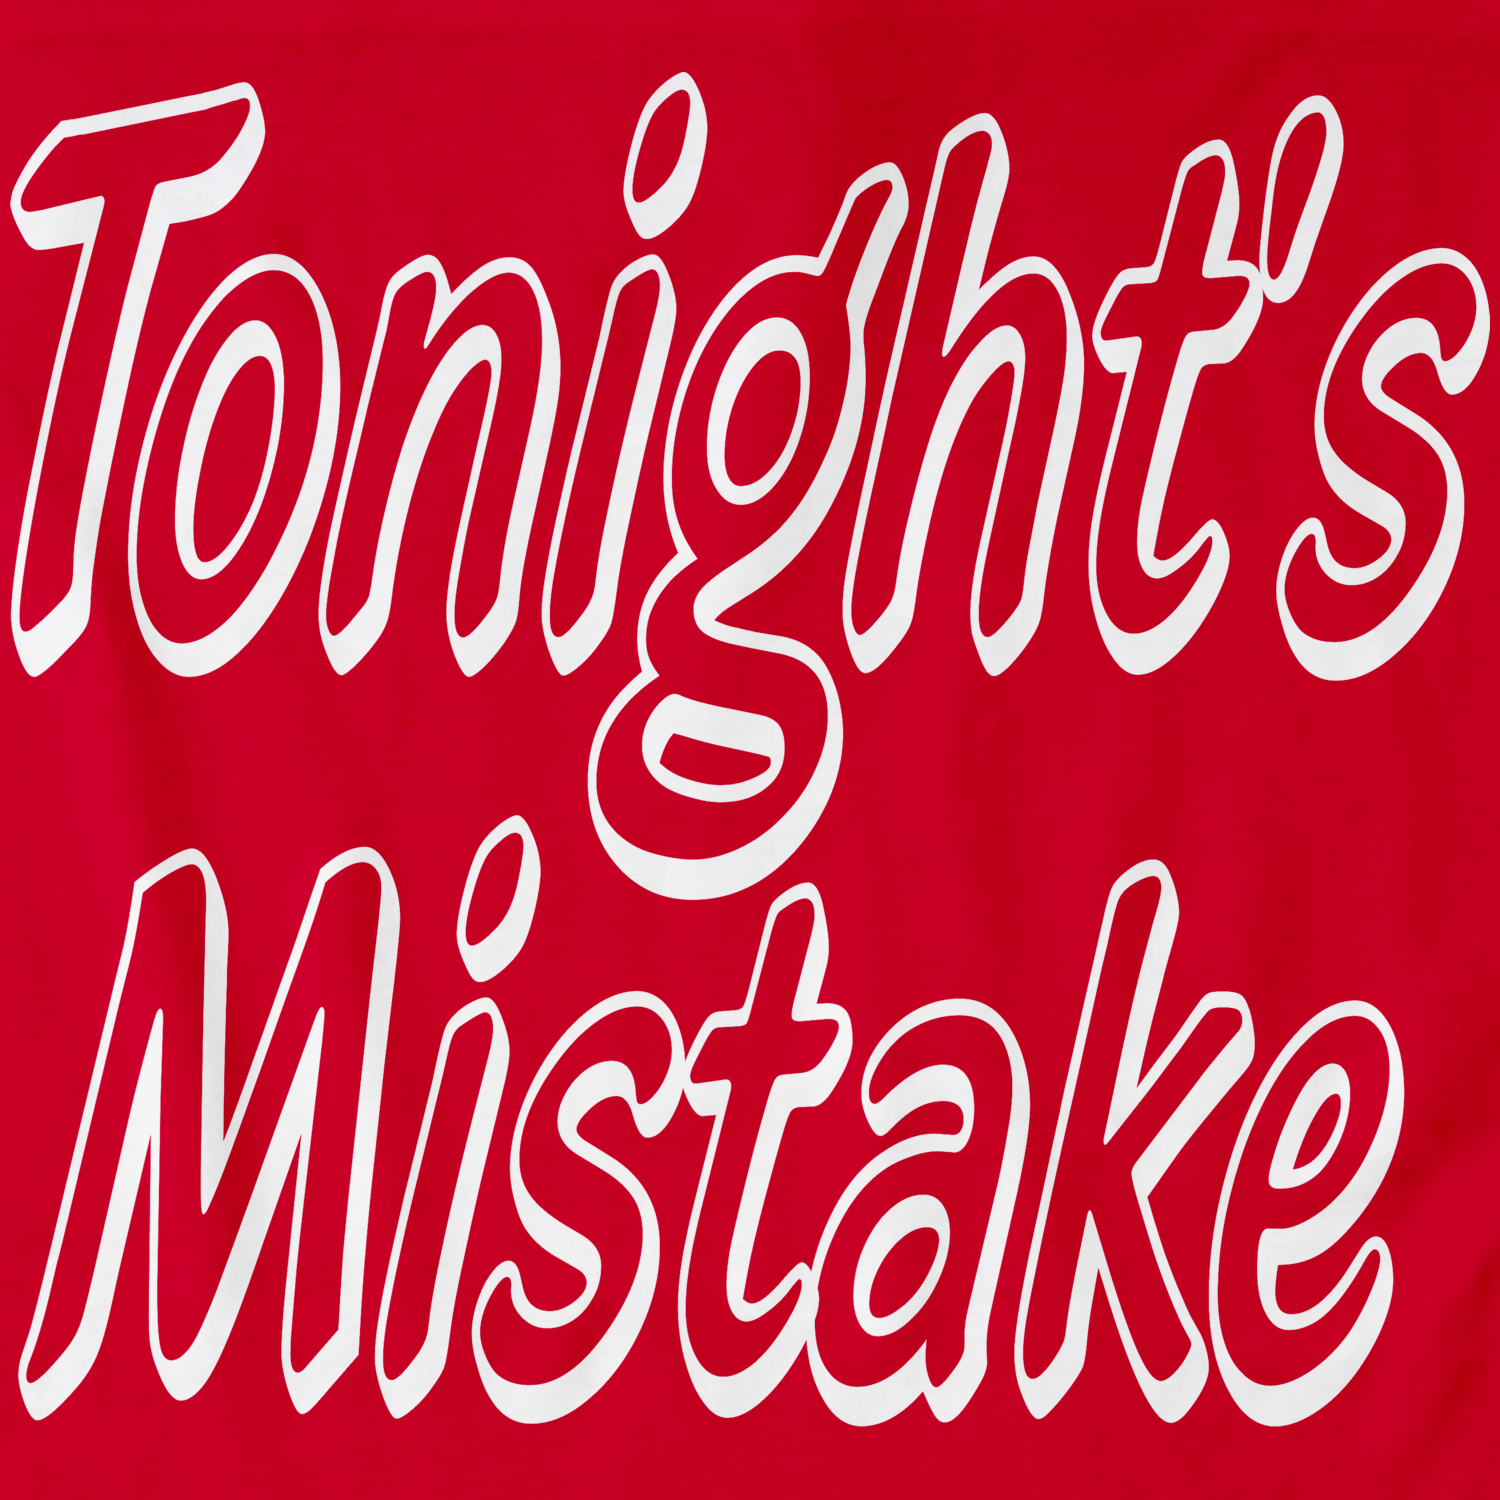 Tonight's Mistake